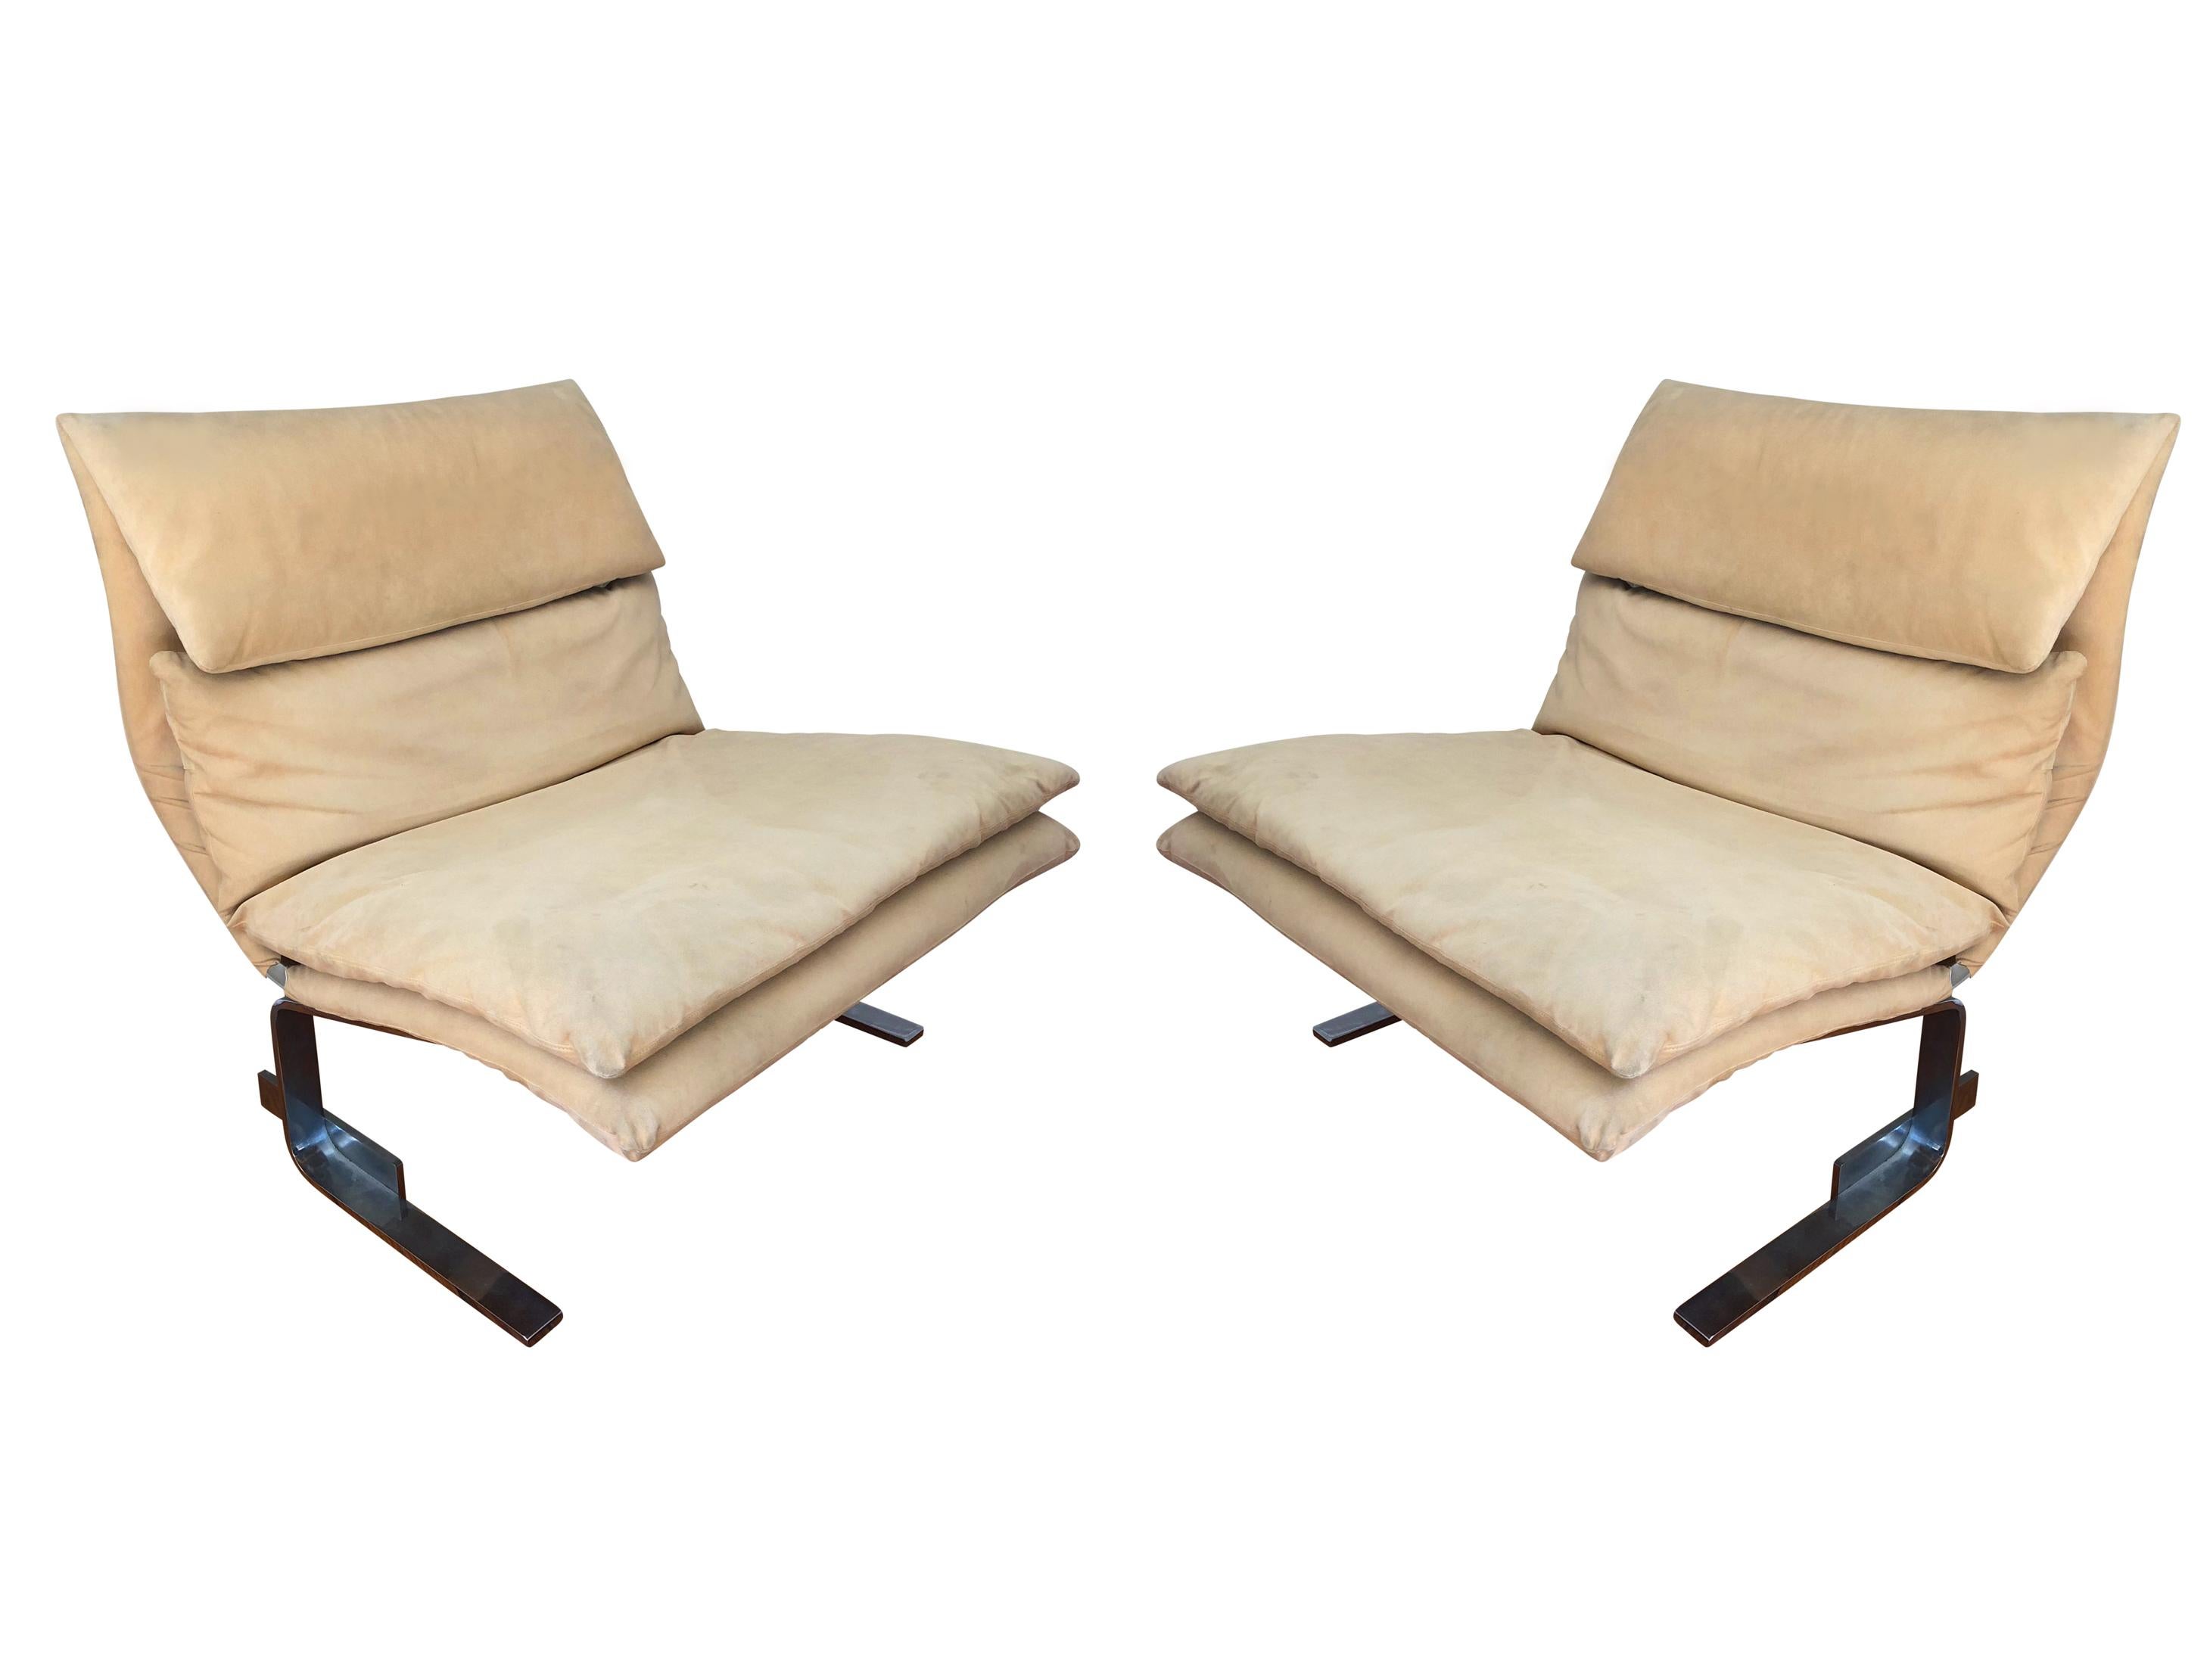 Late 20th Century Pair of Midcentury Italian Modern Onda Slipper Lounge Chairs by Saporiti